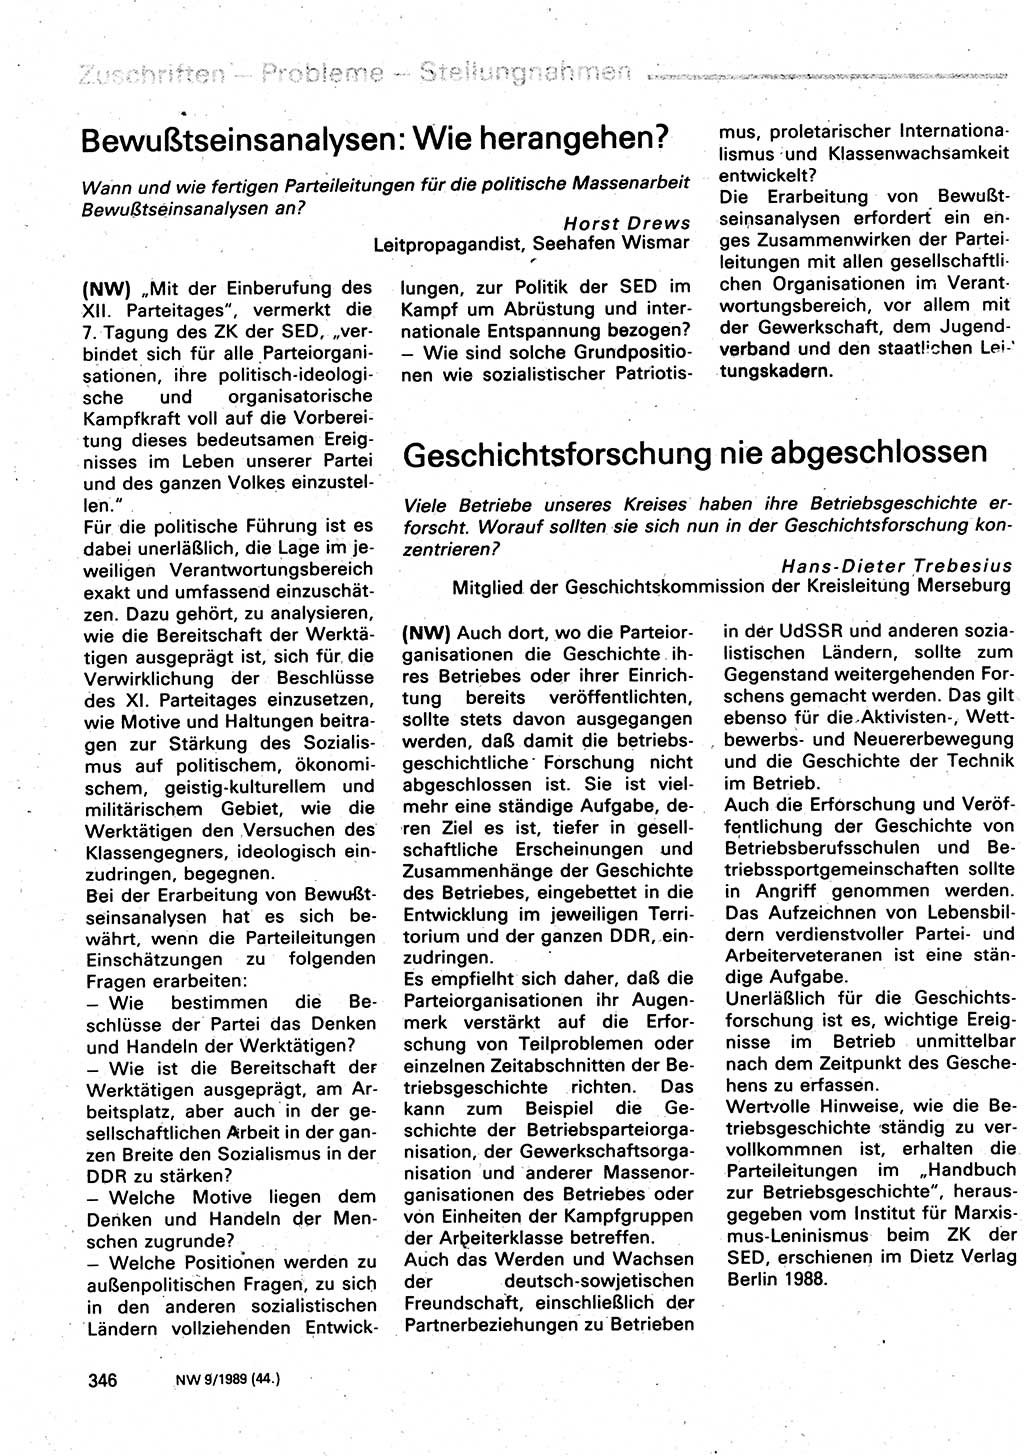 Neuer Weg (NW), Organ des Zentralkomitees (ZK) der SED (Sozialistische Einheitspartei Deutschlands) für Fragen des Parteilebens, 44. Jahrgang [Deutsche Demokratische Republik (DDR)] 1989, Seite 346 (NW ZK SED DDR 1989, S. 346)